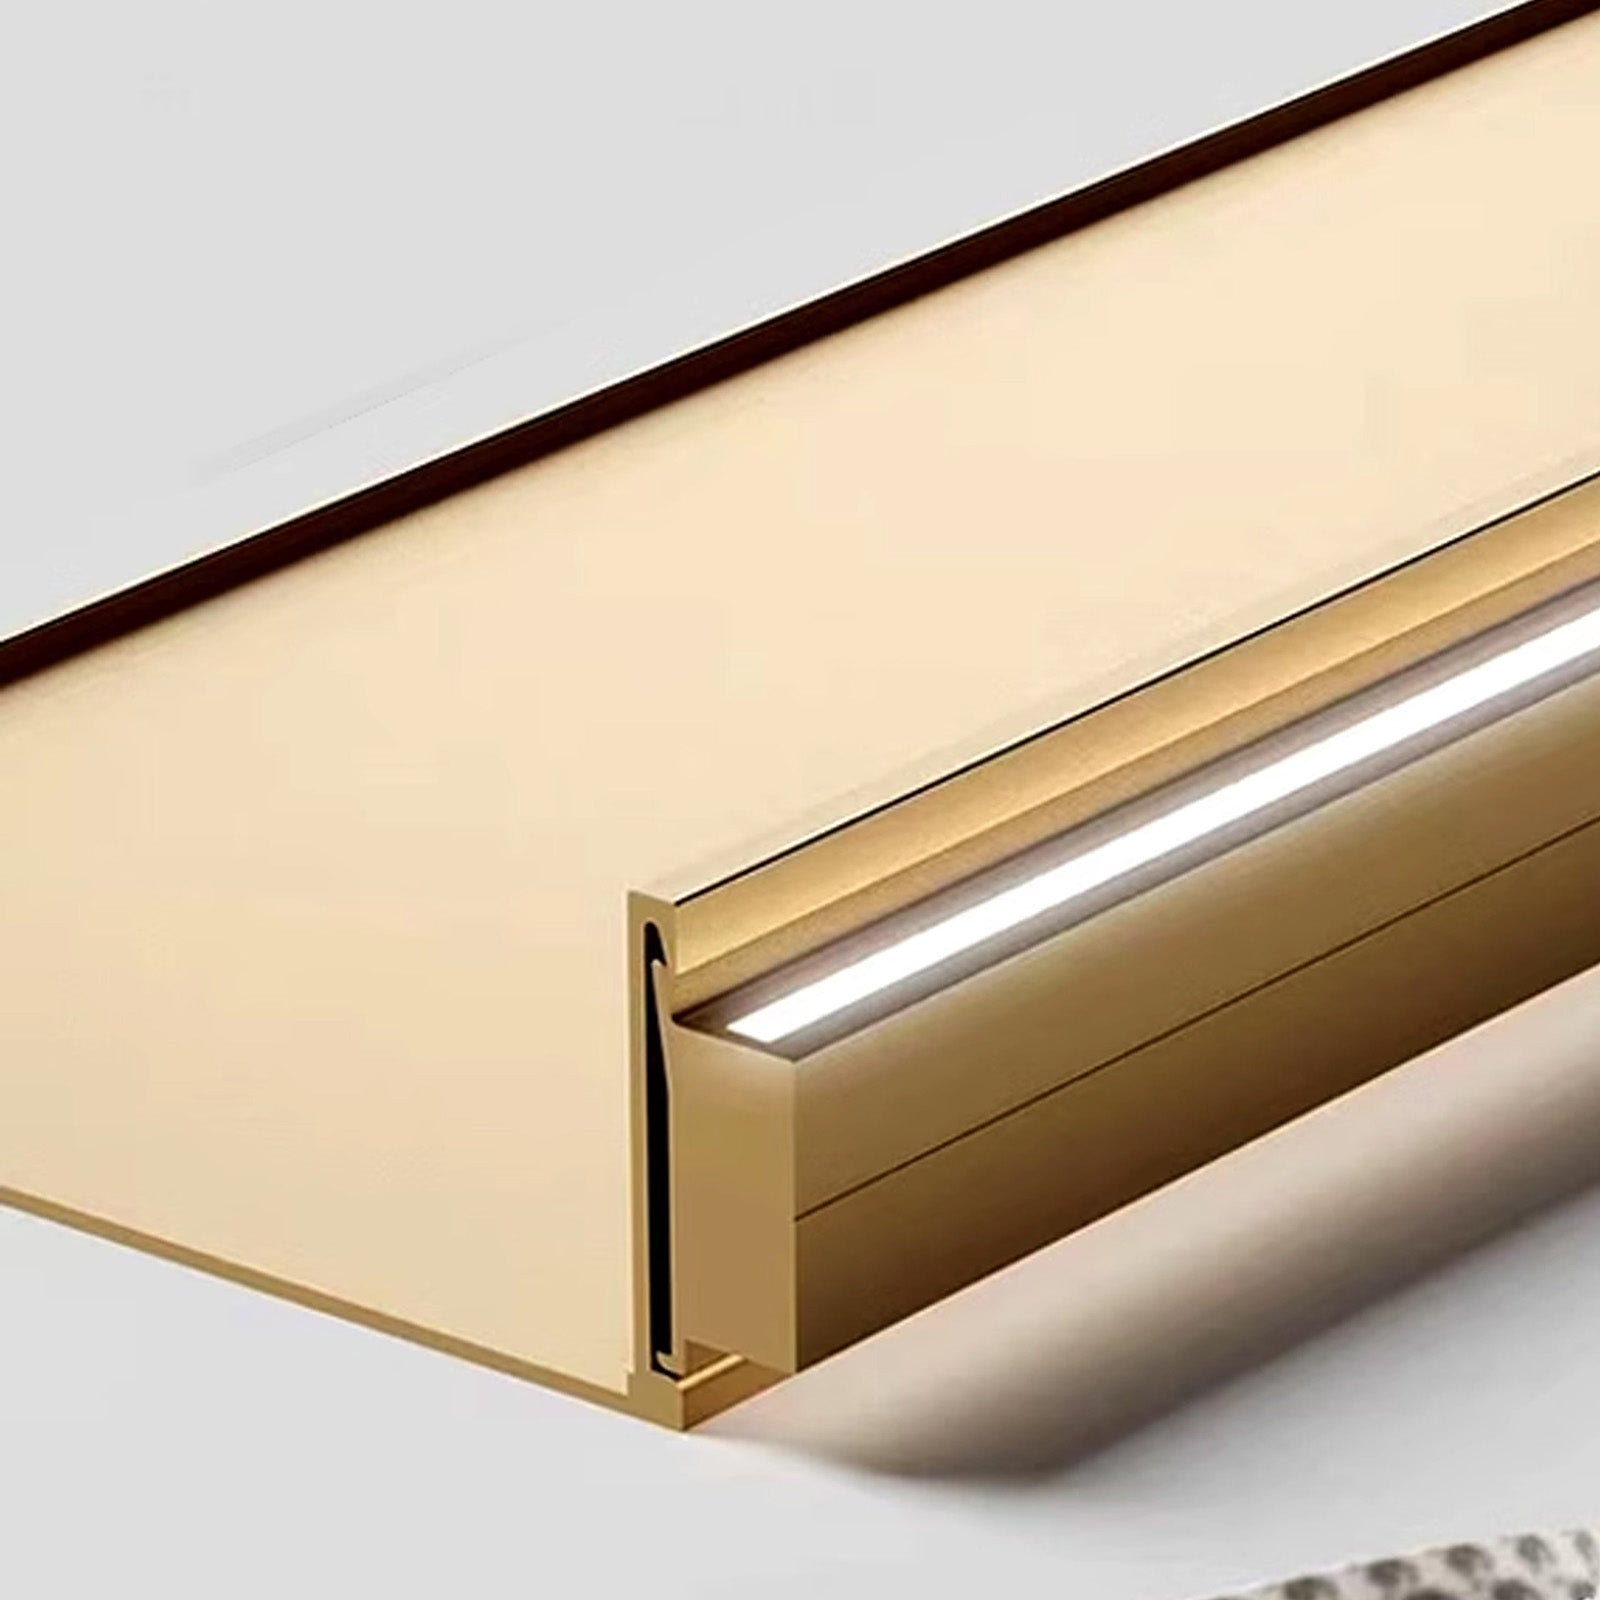 Buy LED Aluminum Panel Light CH4-LT048-80cm-brush bronze gold-with  plug-4000k